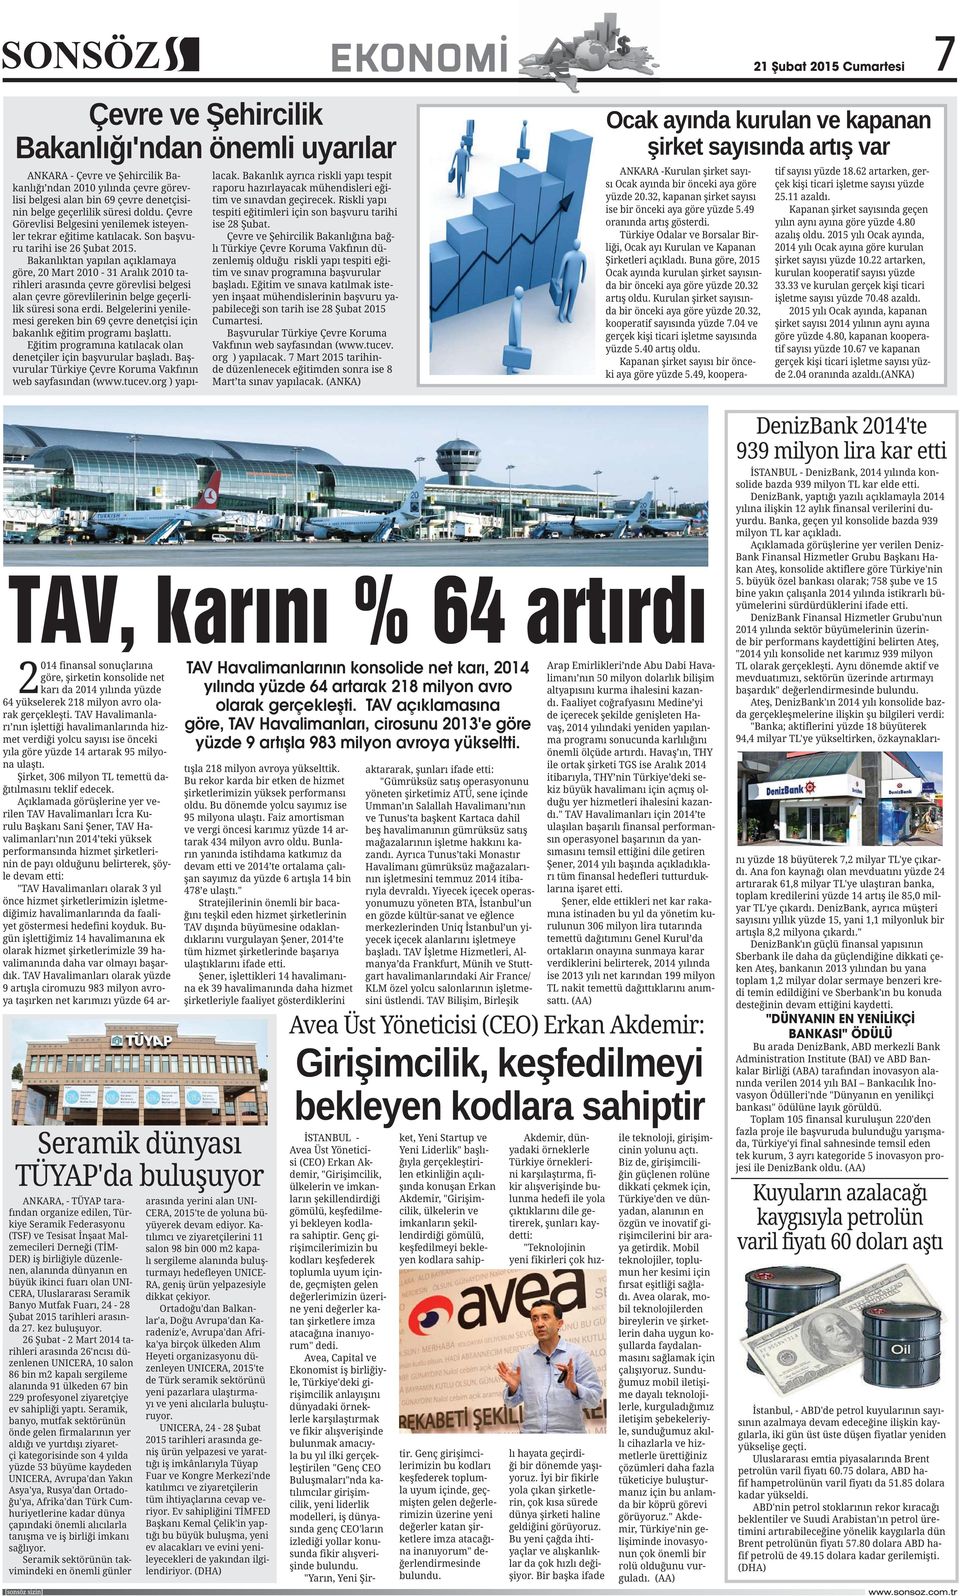 TAV açıklamasına göre, TAV Havalimanları, cirosunu 2013'e göre yüzde 9 artışla 983 milyon avroya yükseltti.